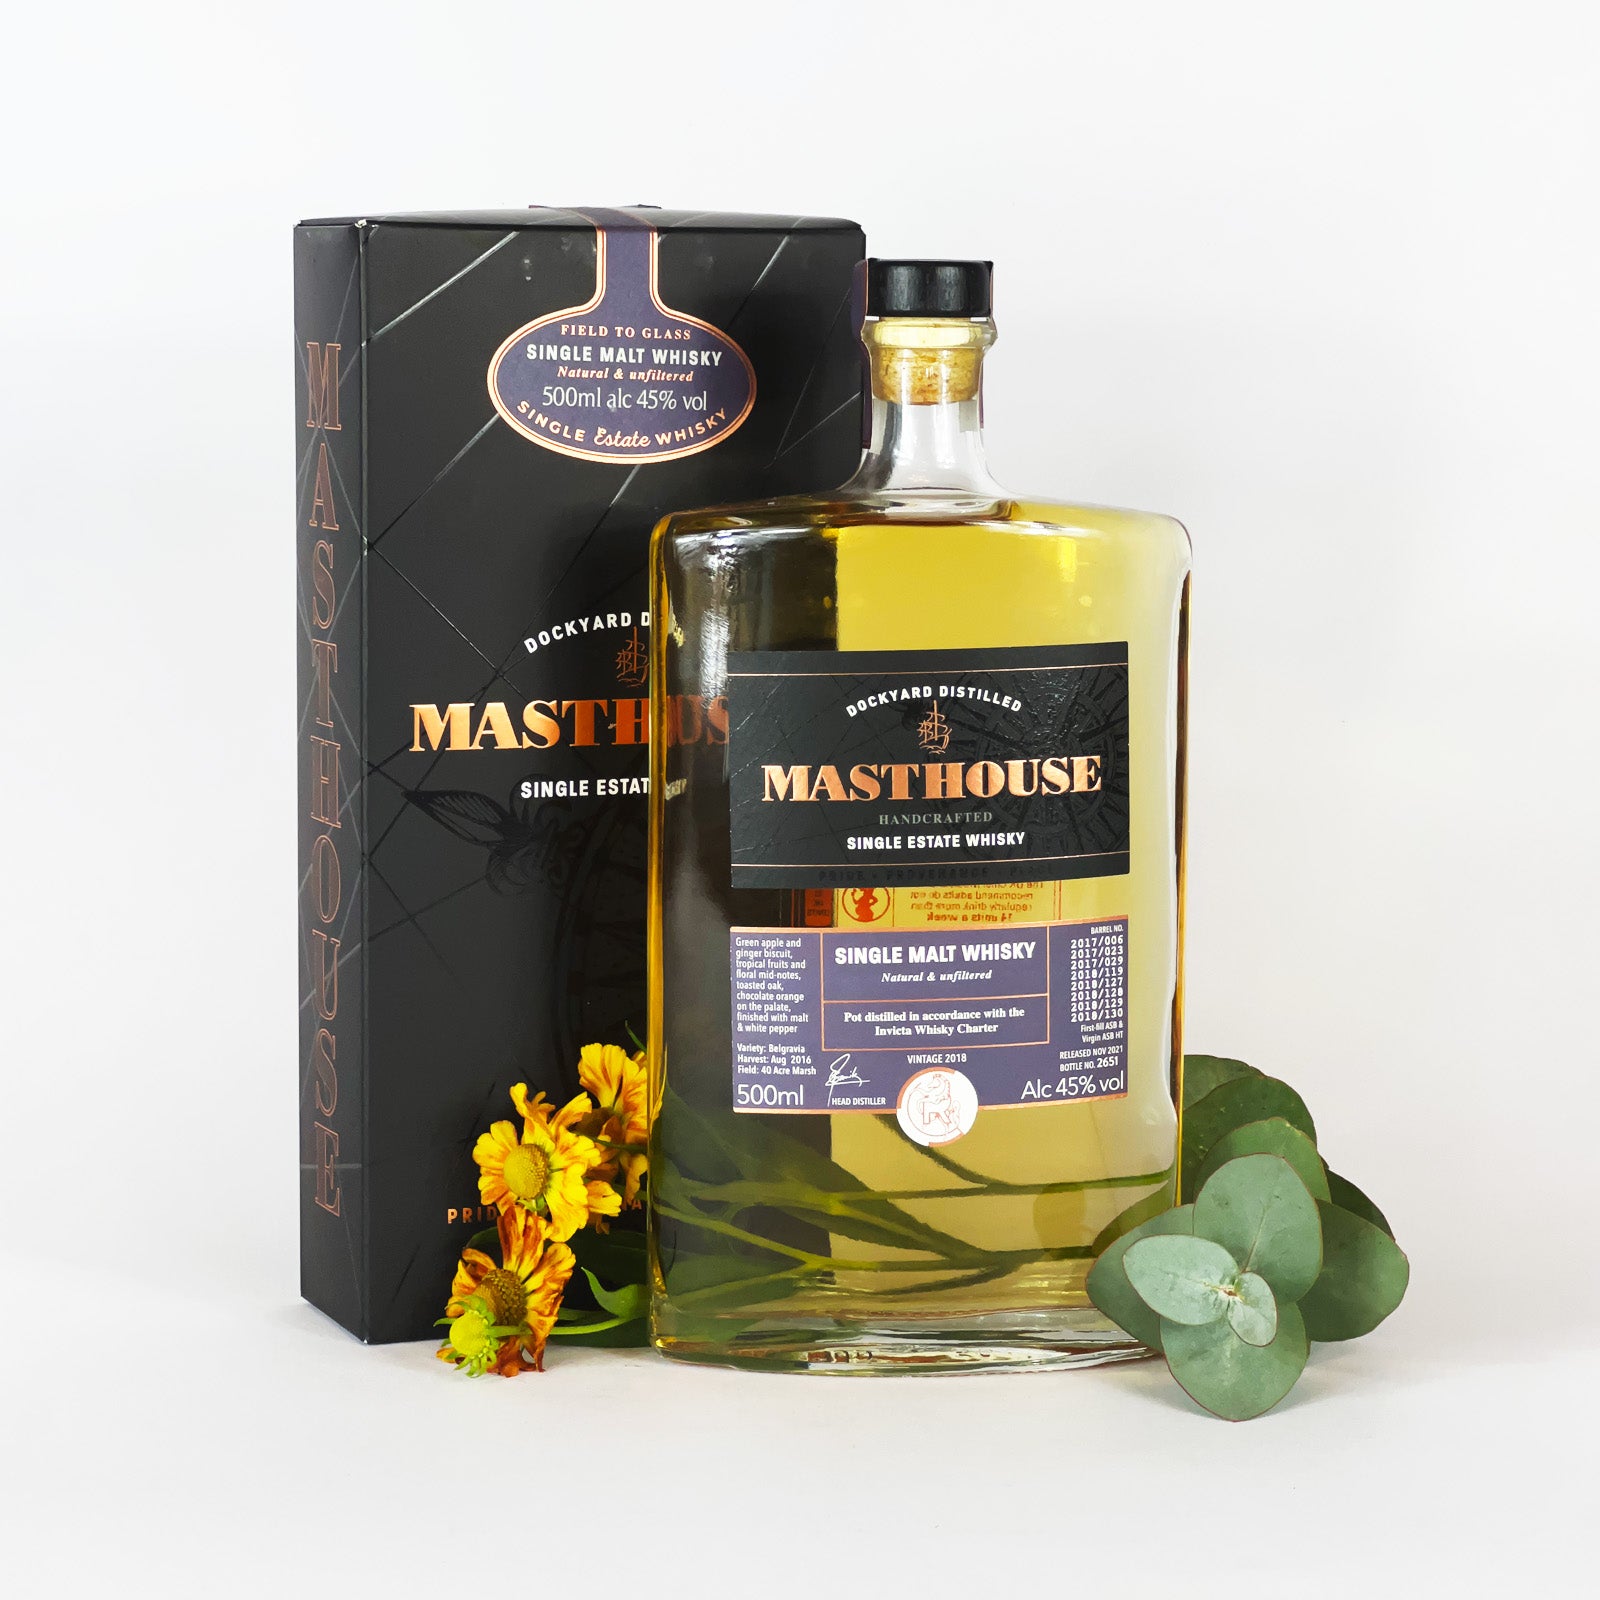 Masthouse Whisky Gift Set